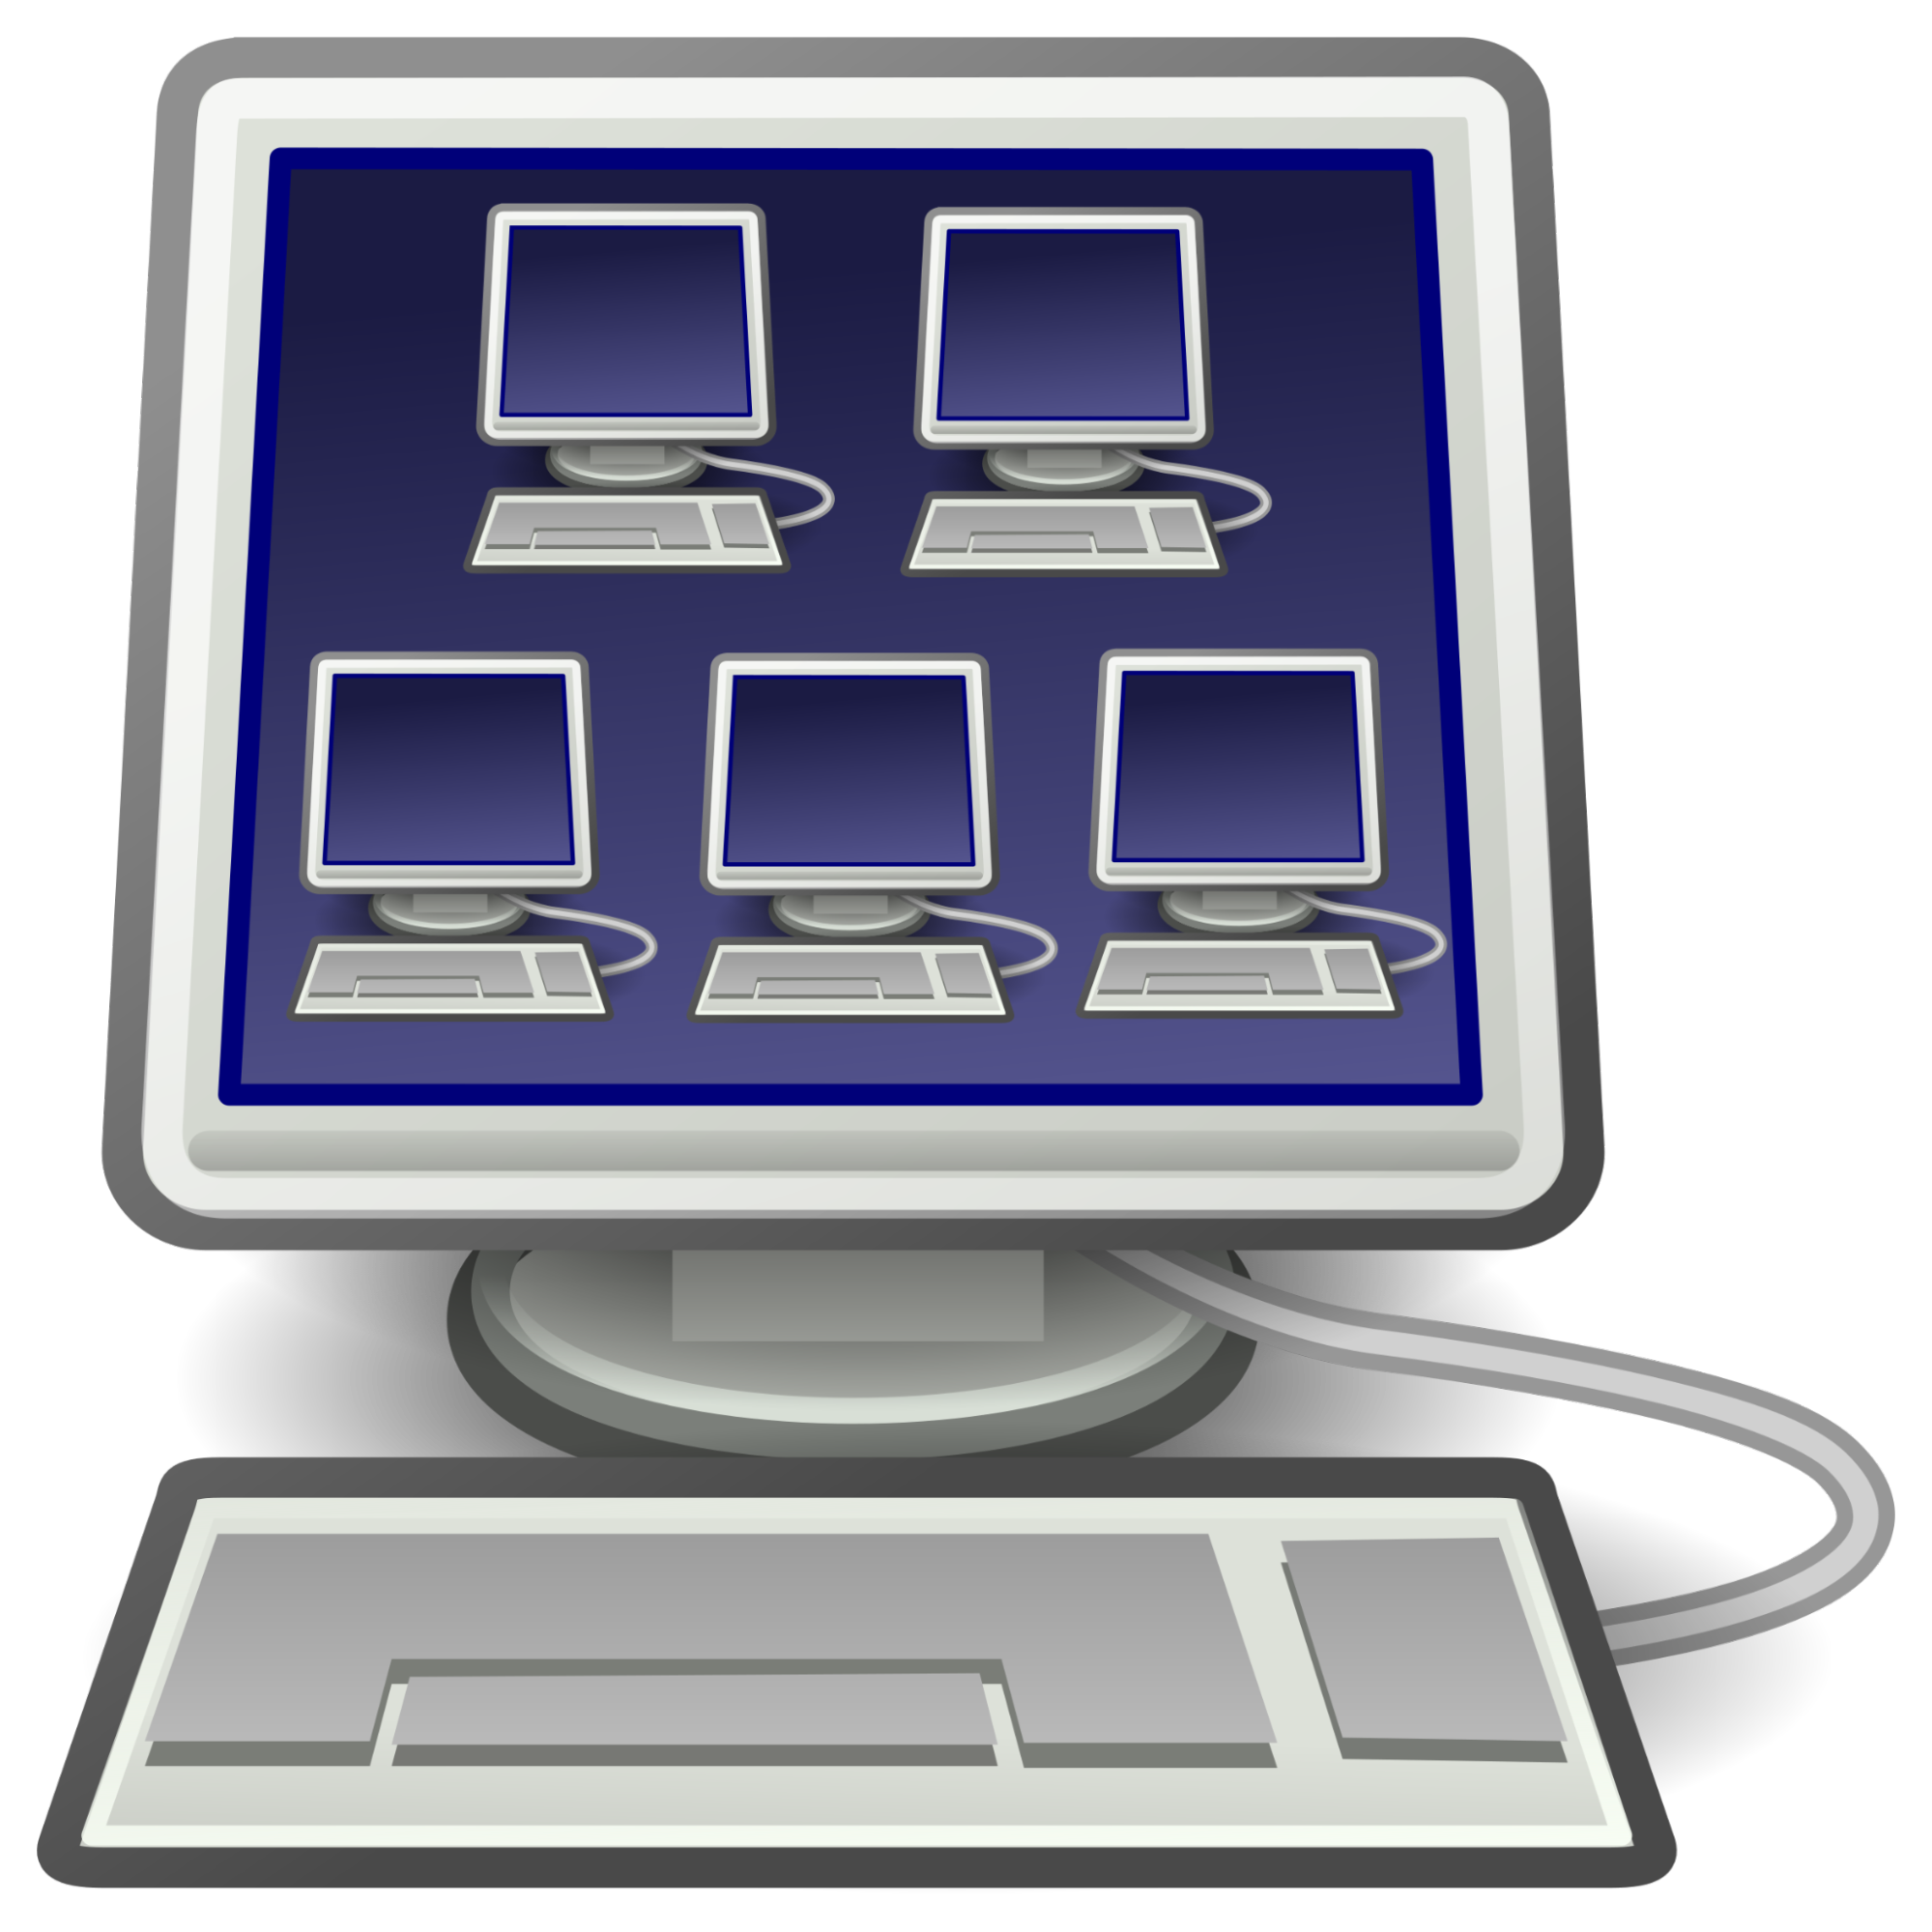 A imagem mostra um computador desktop com imagens de outros 5 computadores desktop “dentro” dele, aparentes na tela inicial.